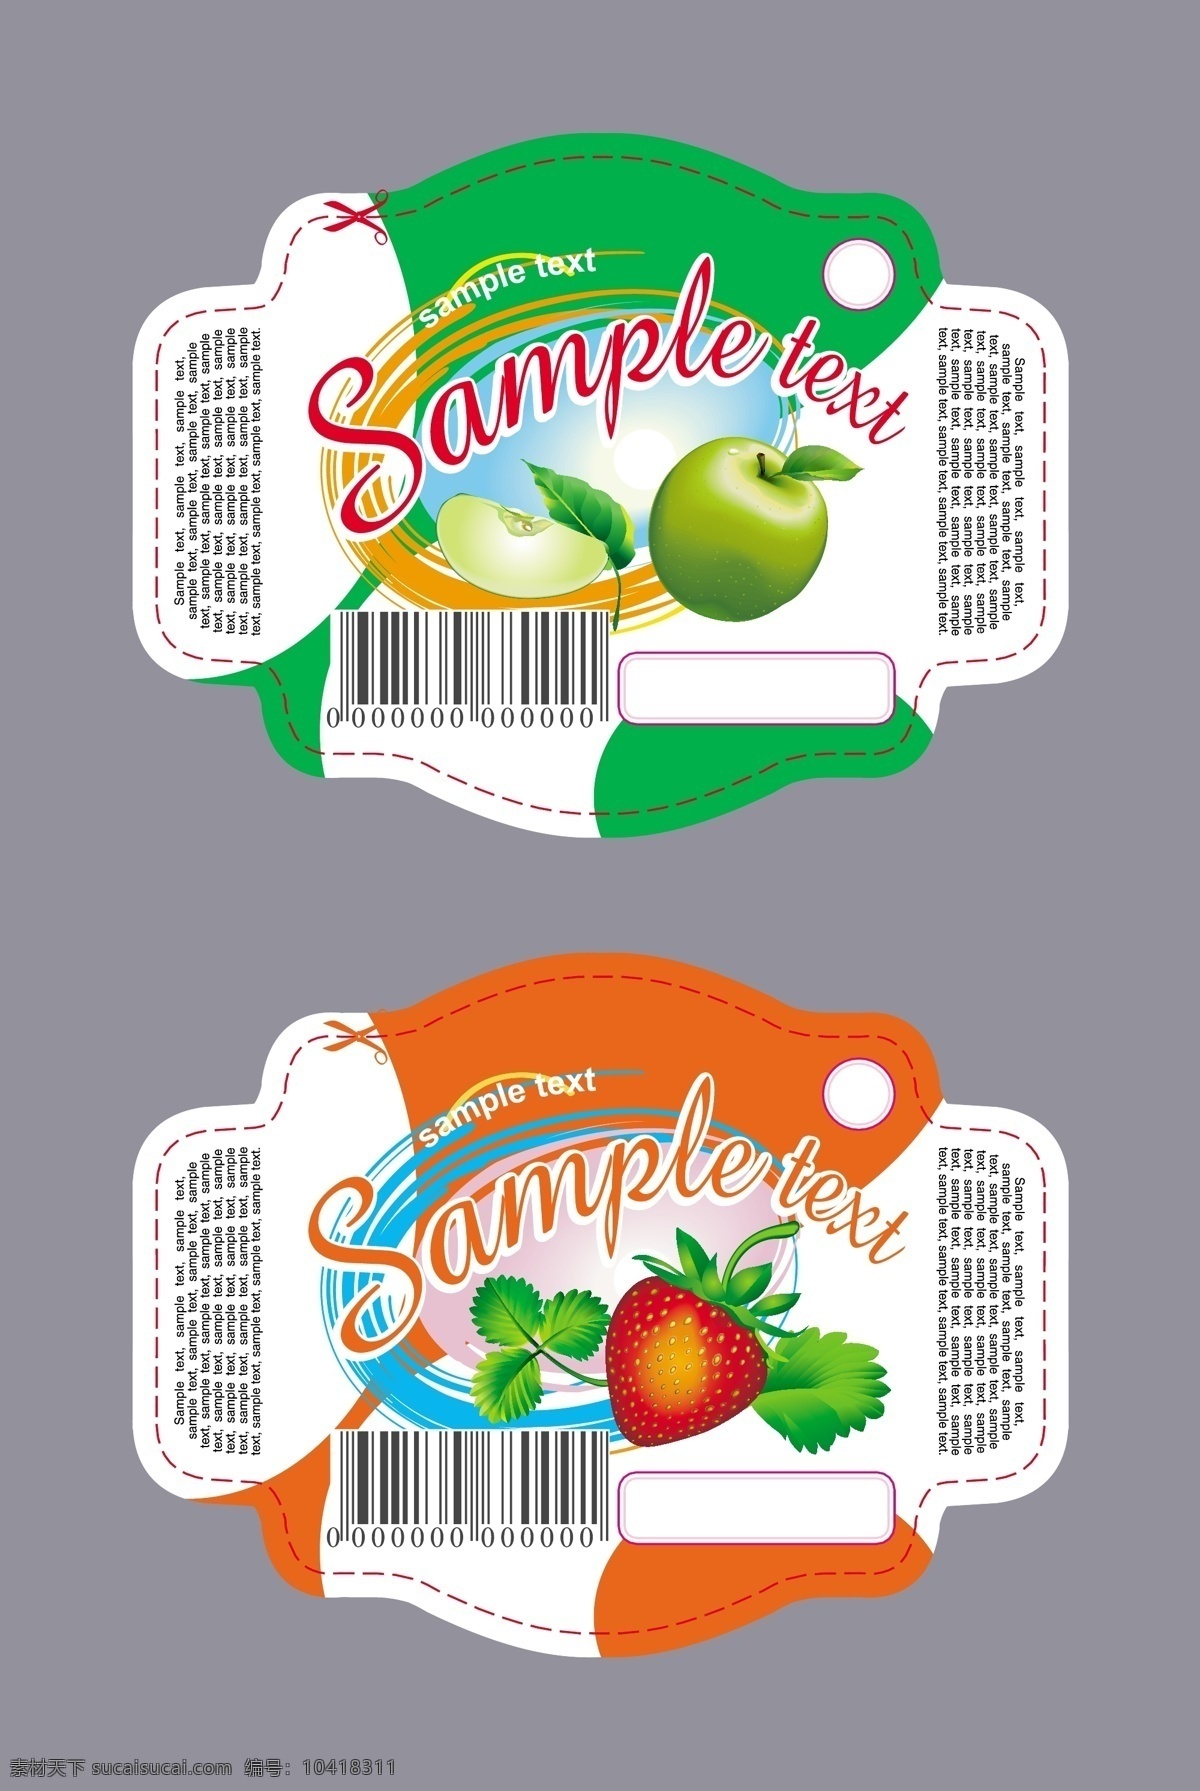 水果标签 草莓 苹果 标签 贴纸 瓶贴 水果 条形码 包装 曲线 背景 底纹 矢量 包装设计